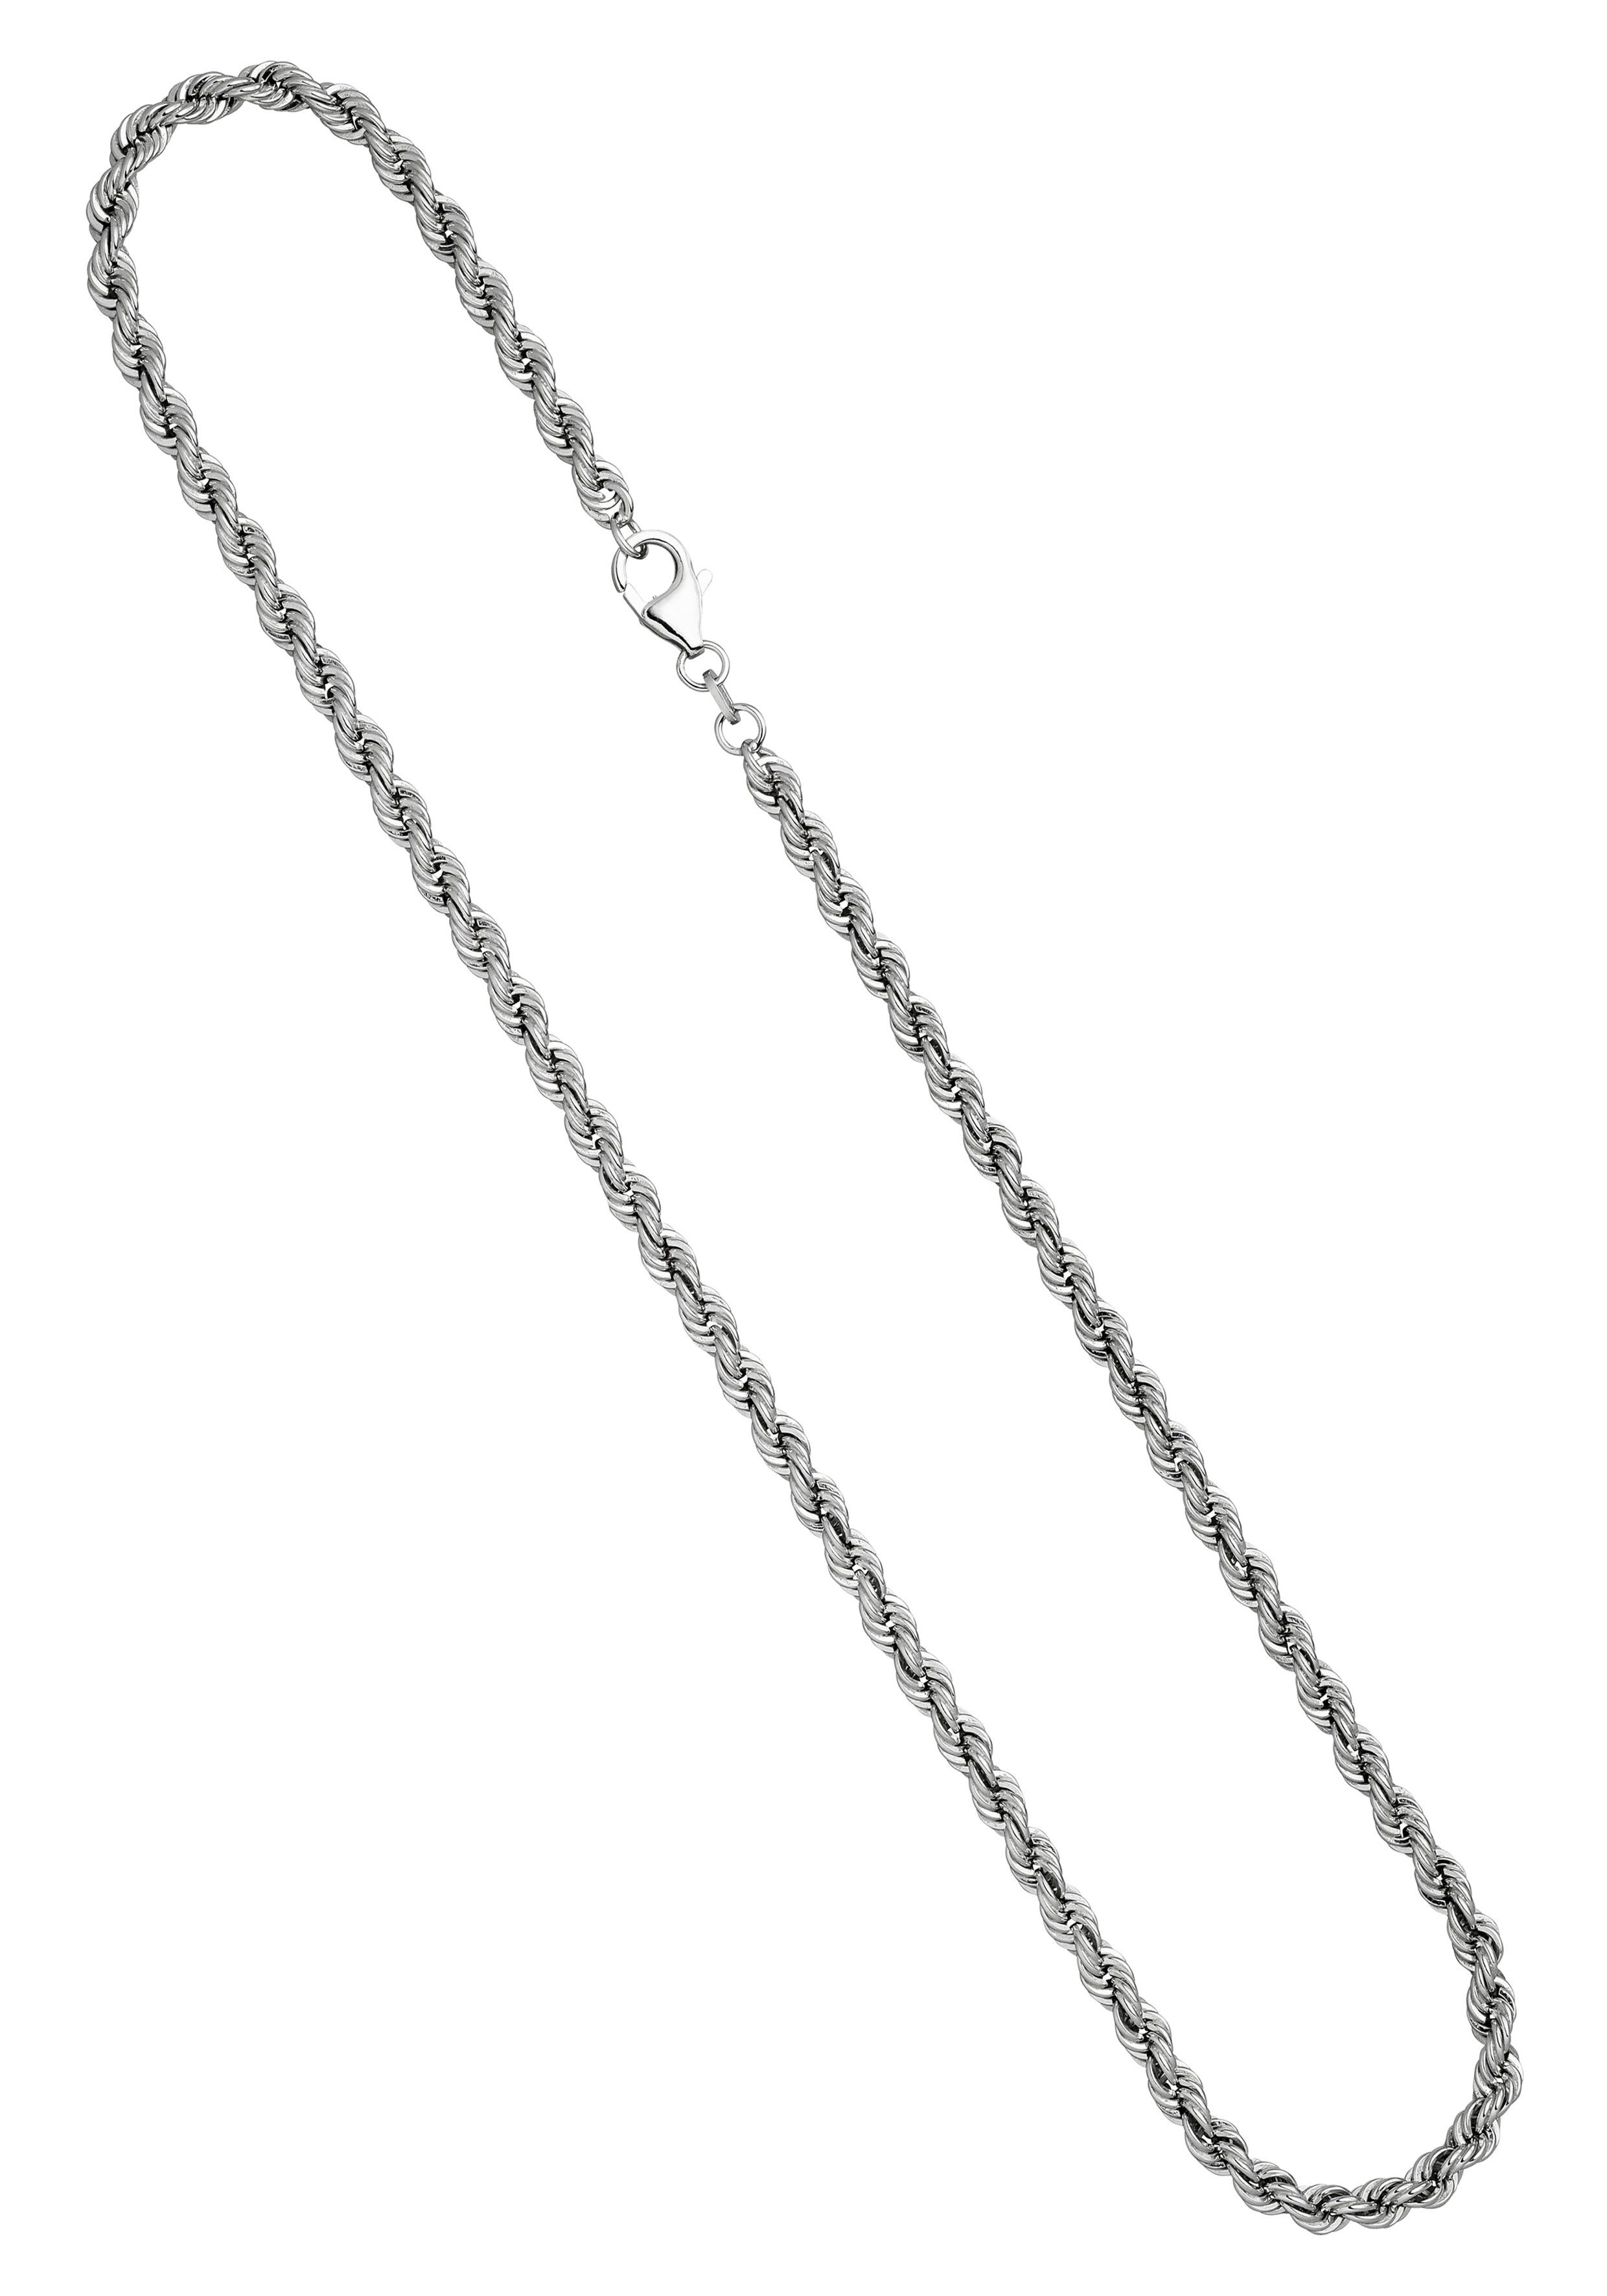 JOBO Silberkette, Kordelkette 925 Silber massiv 50 cm 4,3 mm online kaufen  | OTTO